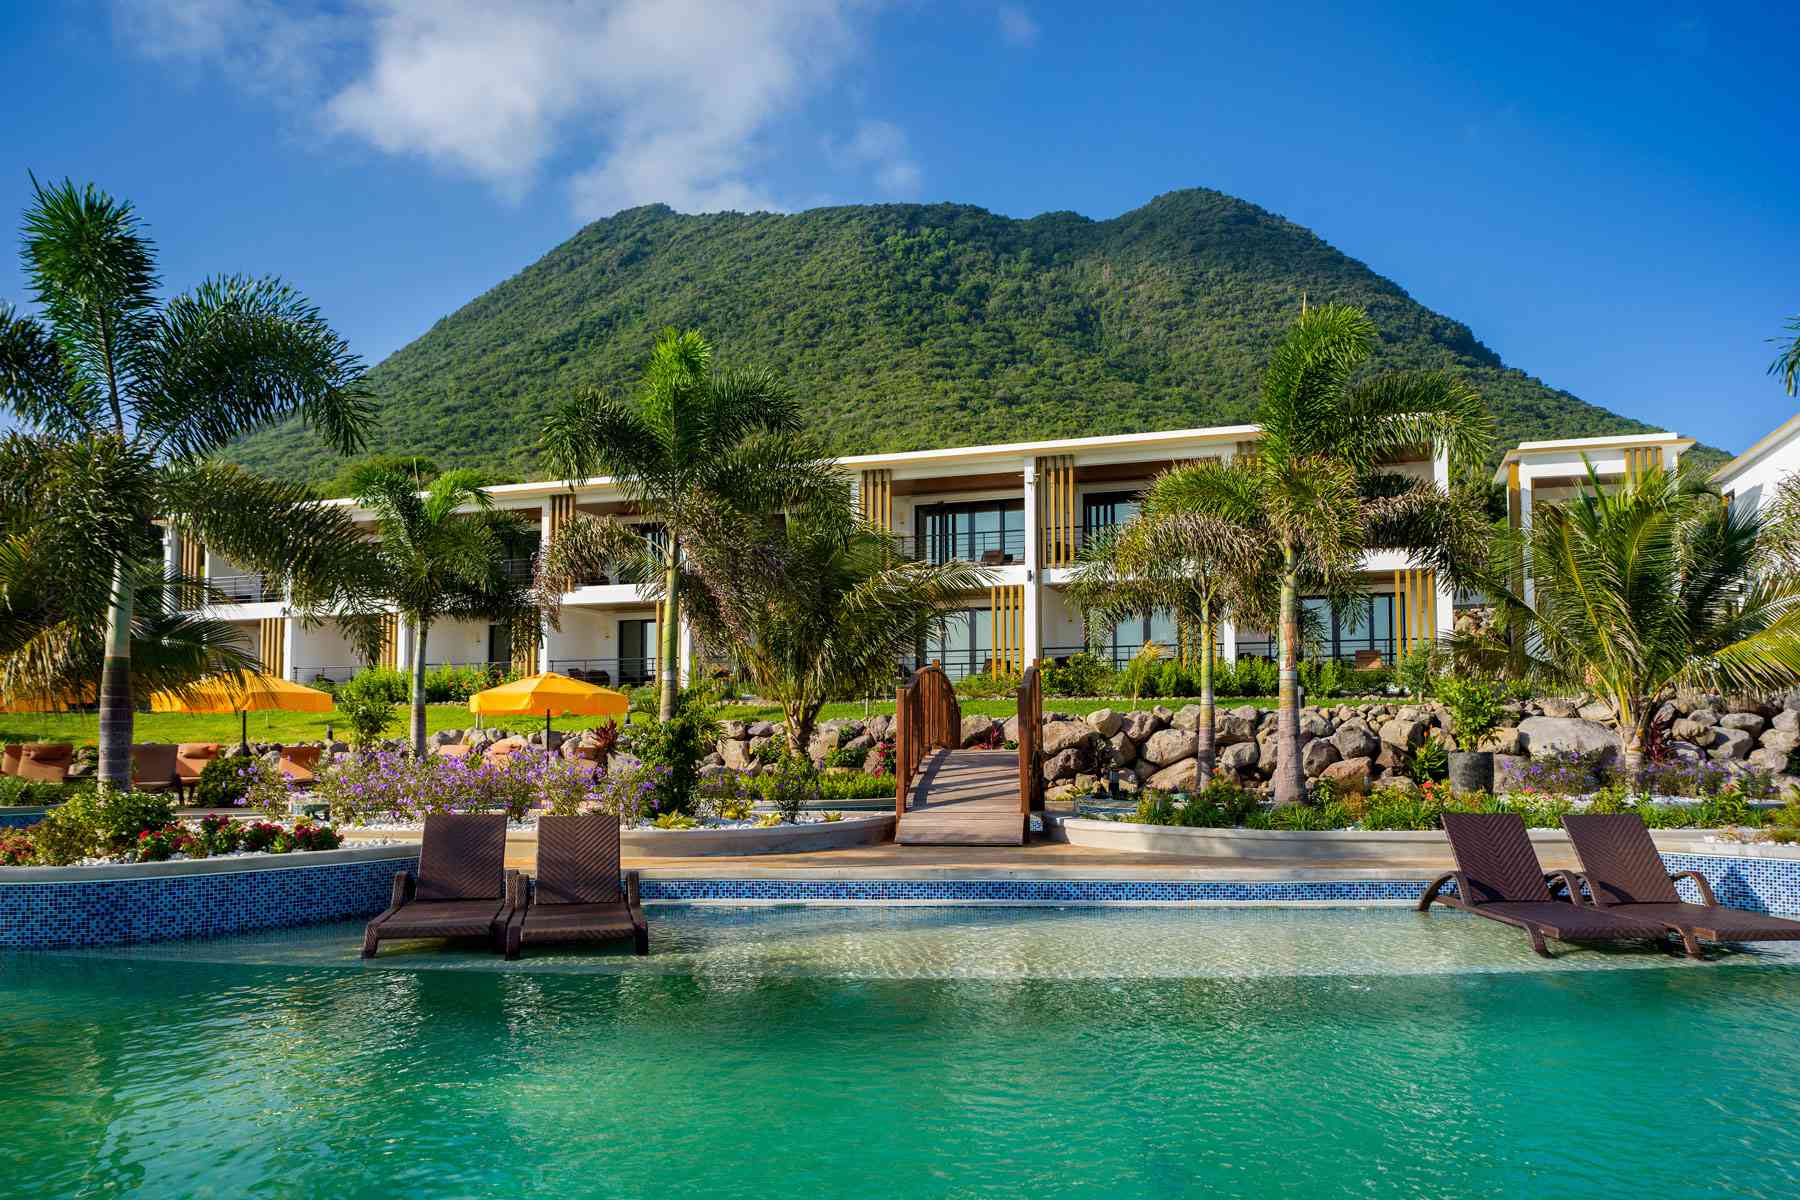 Golden Rock Resort et Quill National Park de l'île de Statia dans les Caraïbes